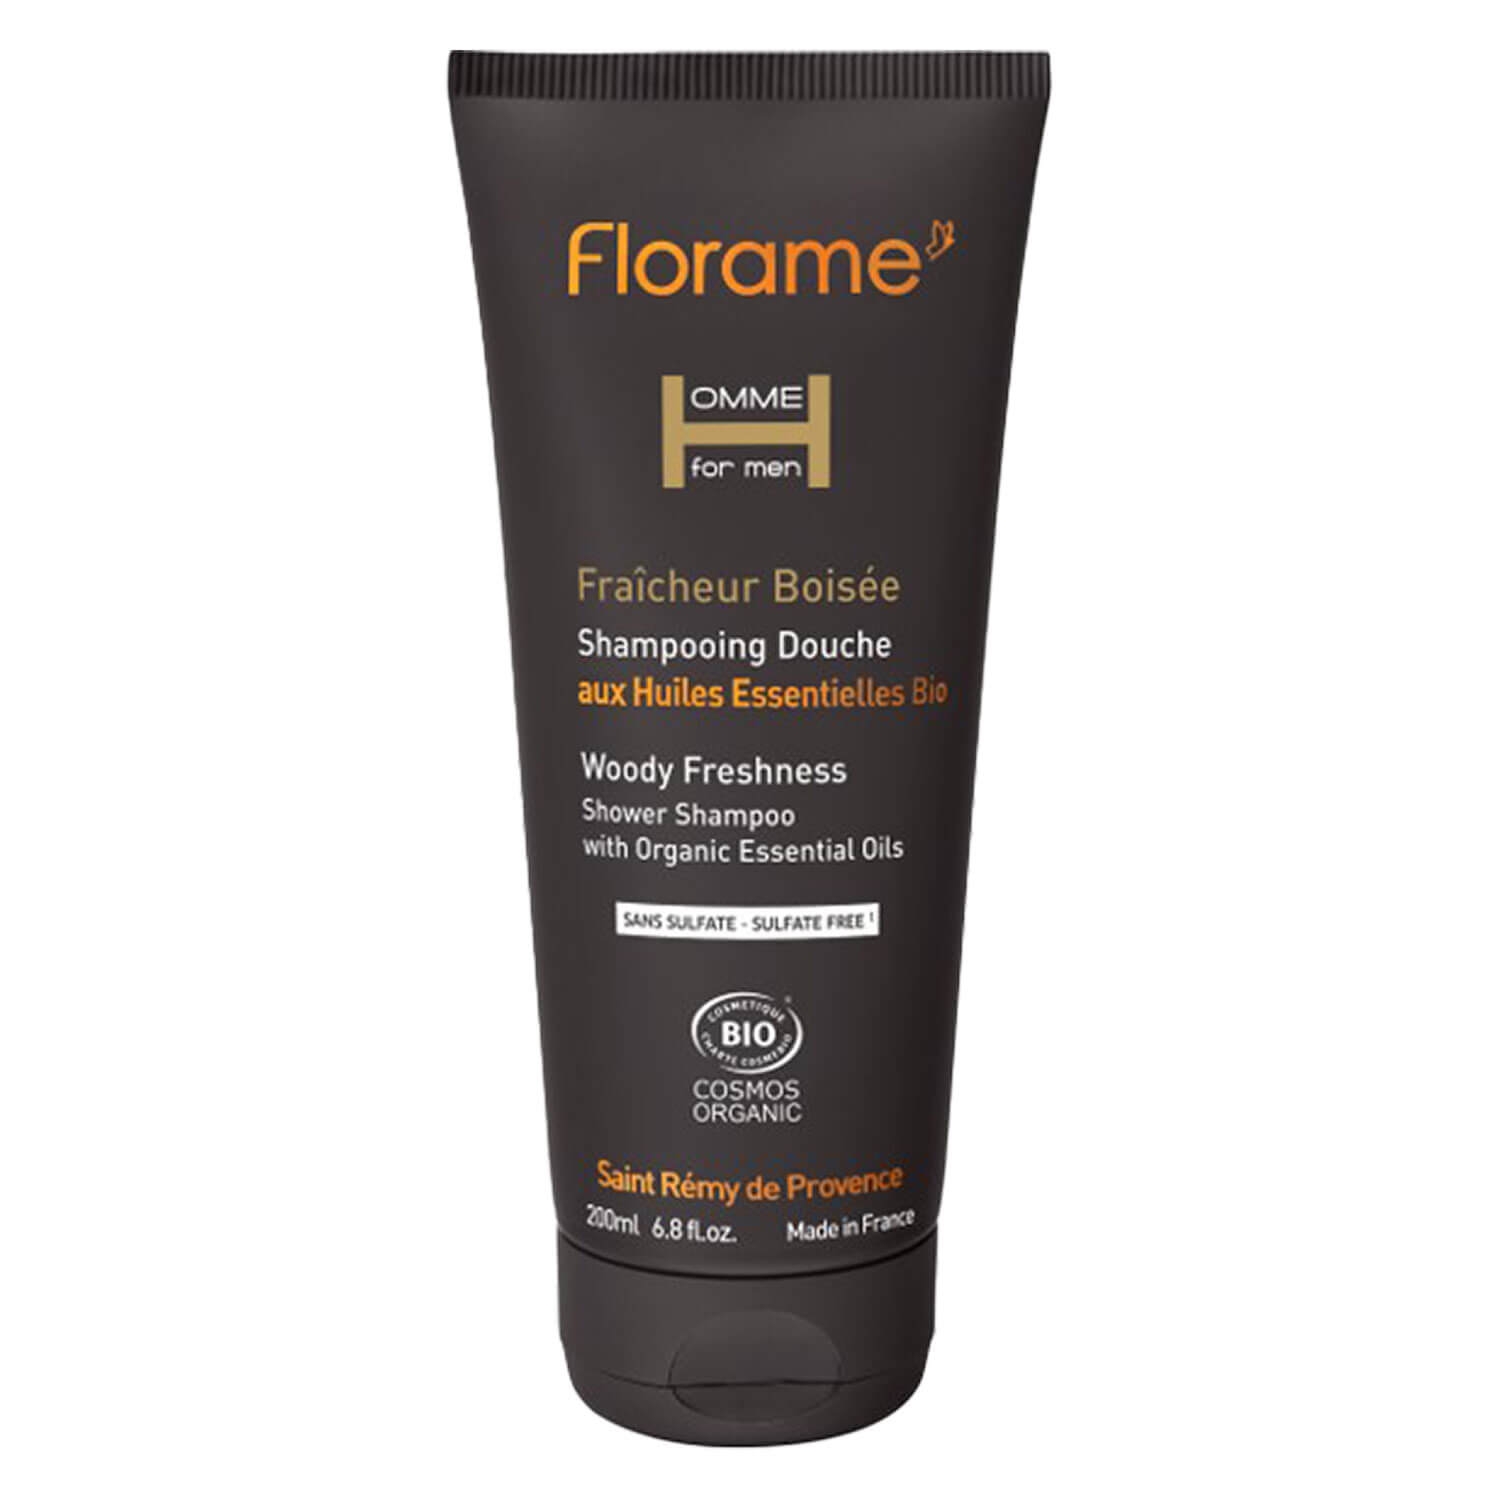 Produktbild von Florame Homme - Woody Freshness Shower Shampoo